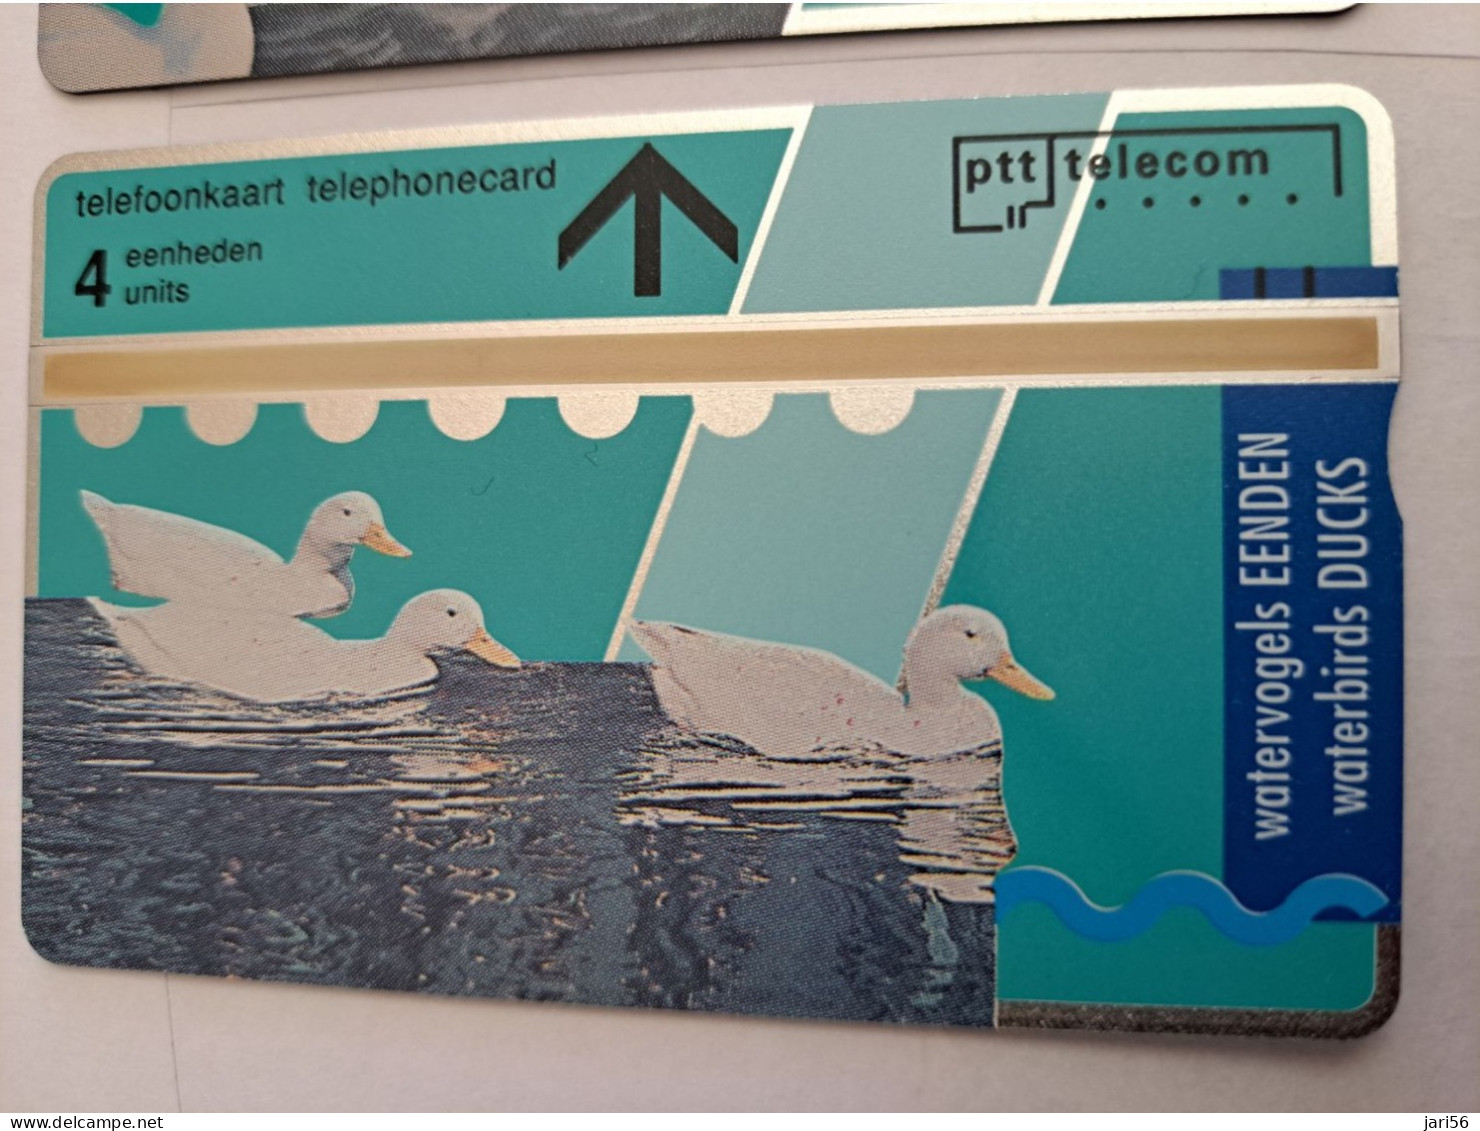 NETHERLANDS  L&G CARDS SERIE SWANS/ BIRDS  3X  R008/01-03 TELE ART    /  MINT   ** 13073** - Public